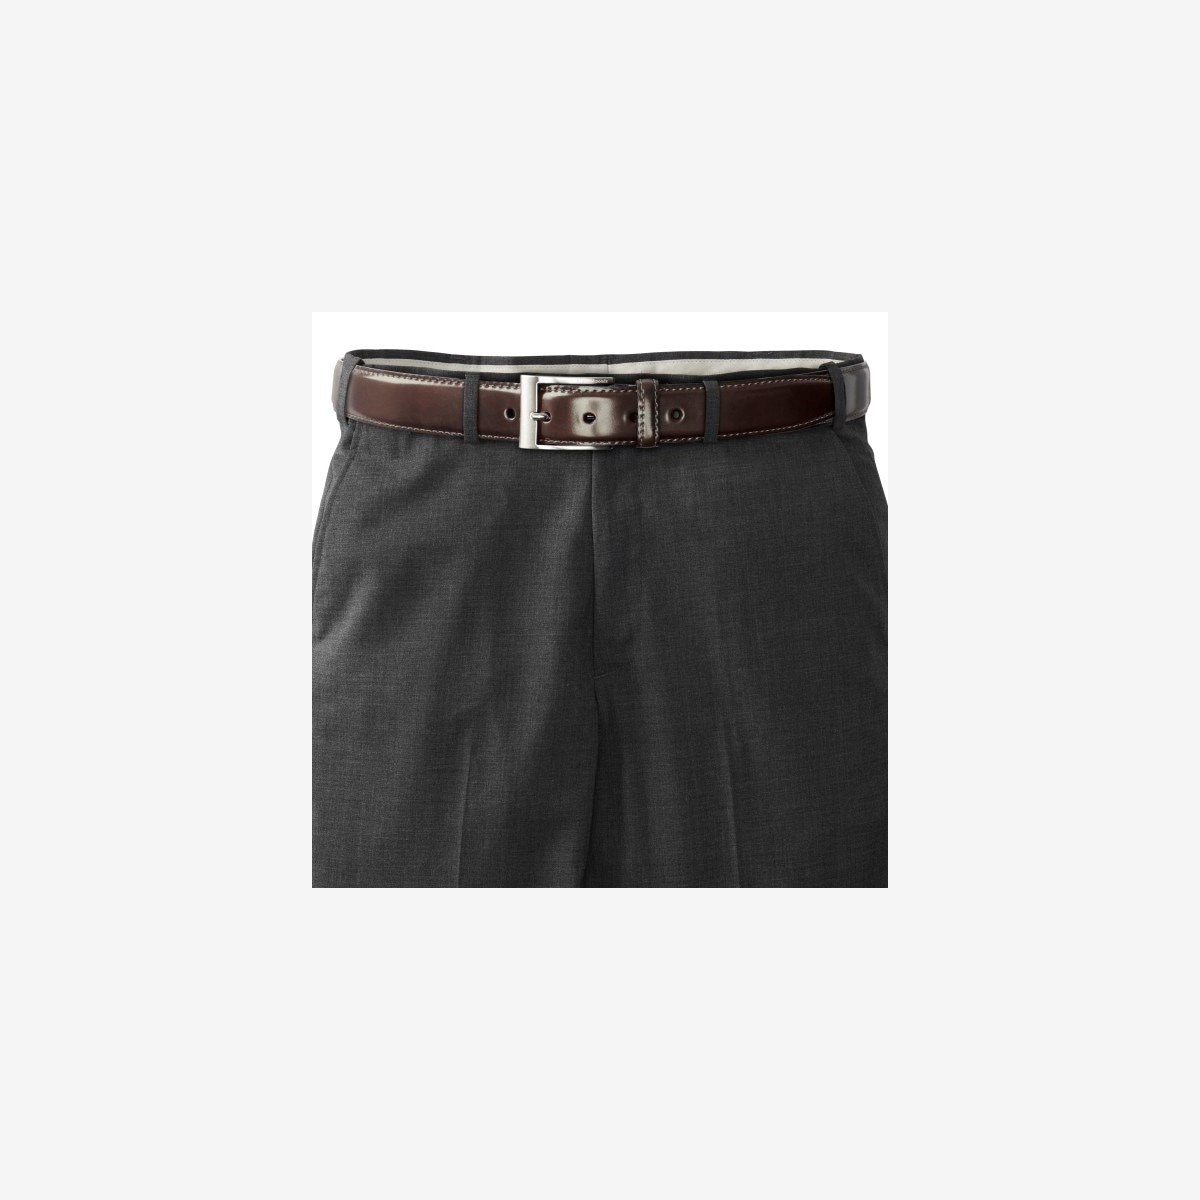 Cordovan Avenue II Dress Belt | Men's Belts | Allen Edmonds